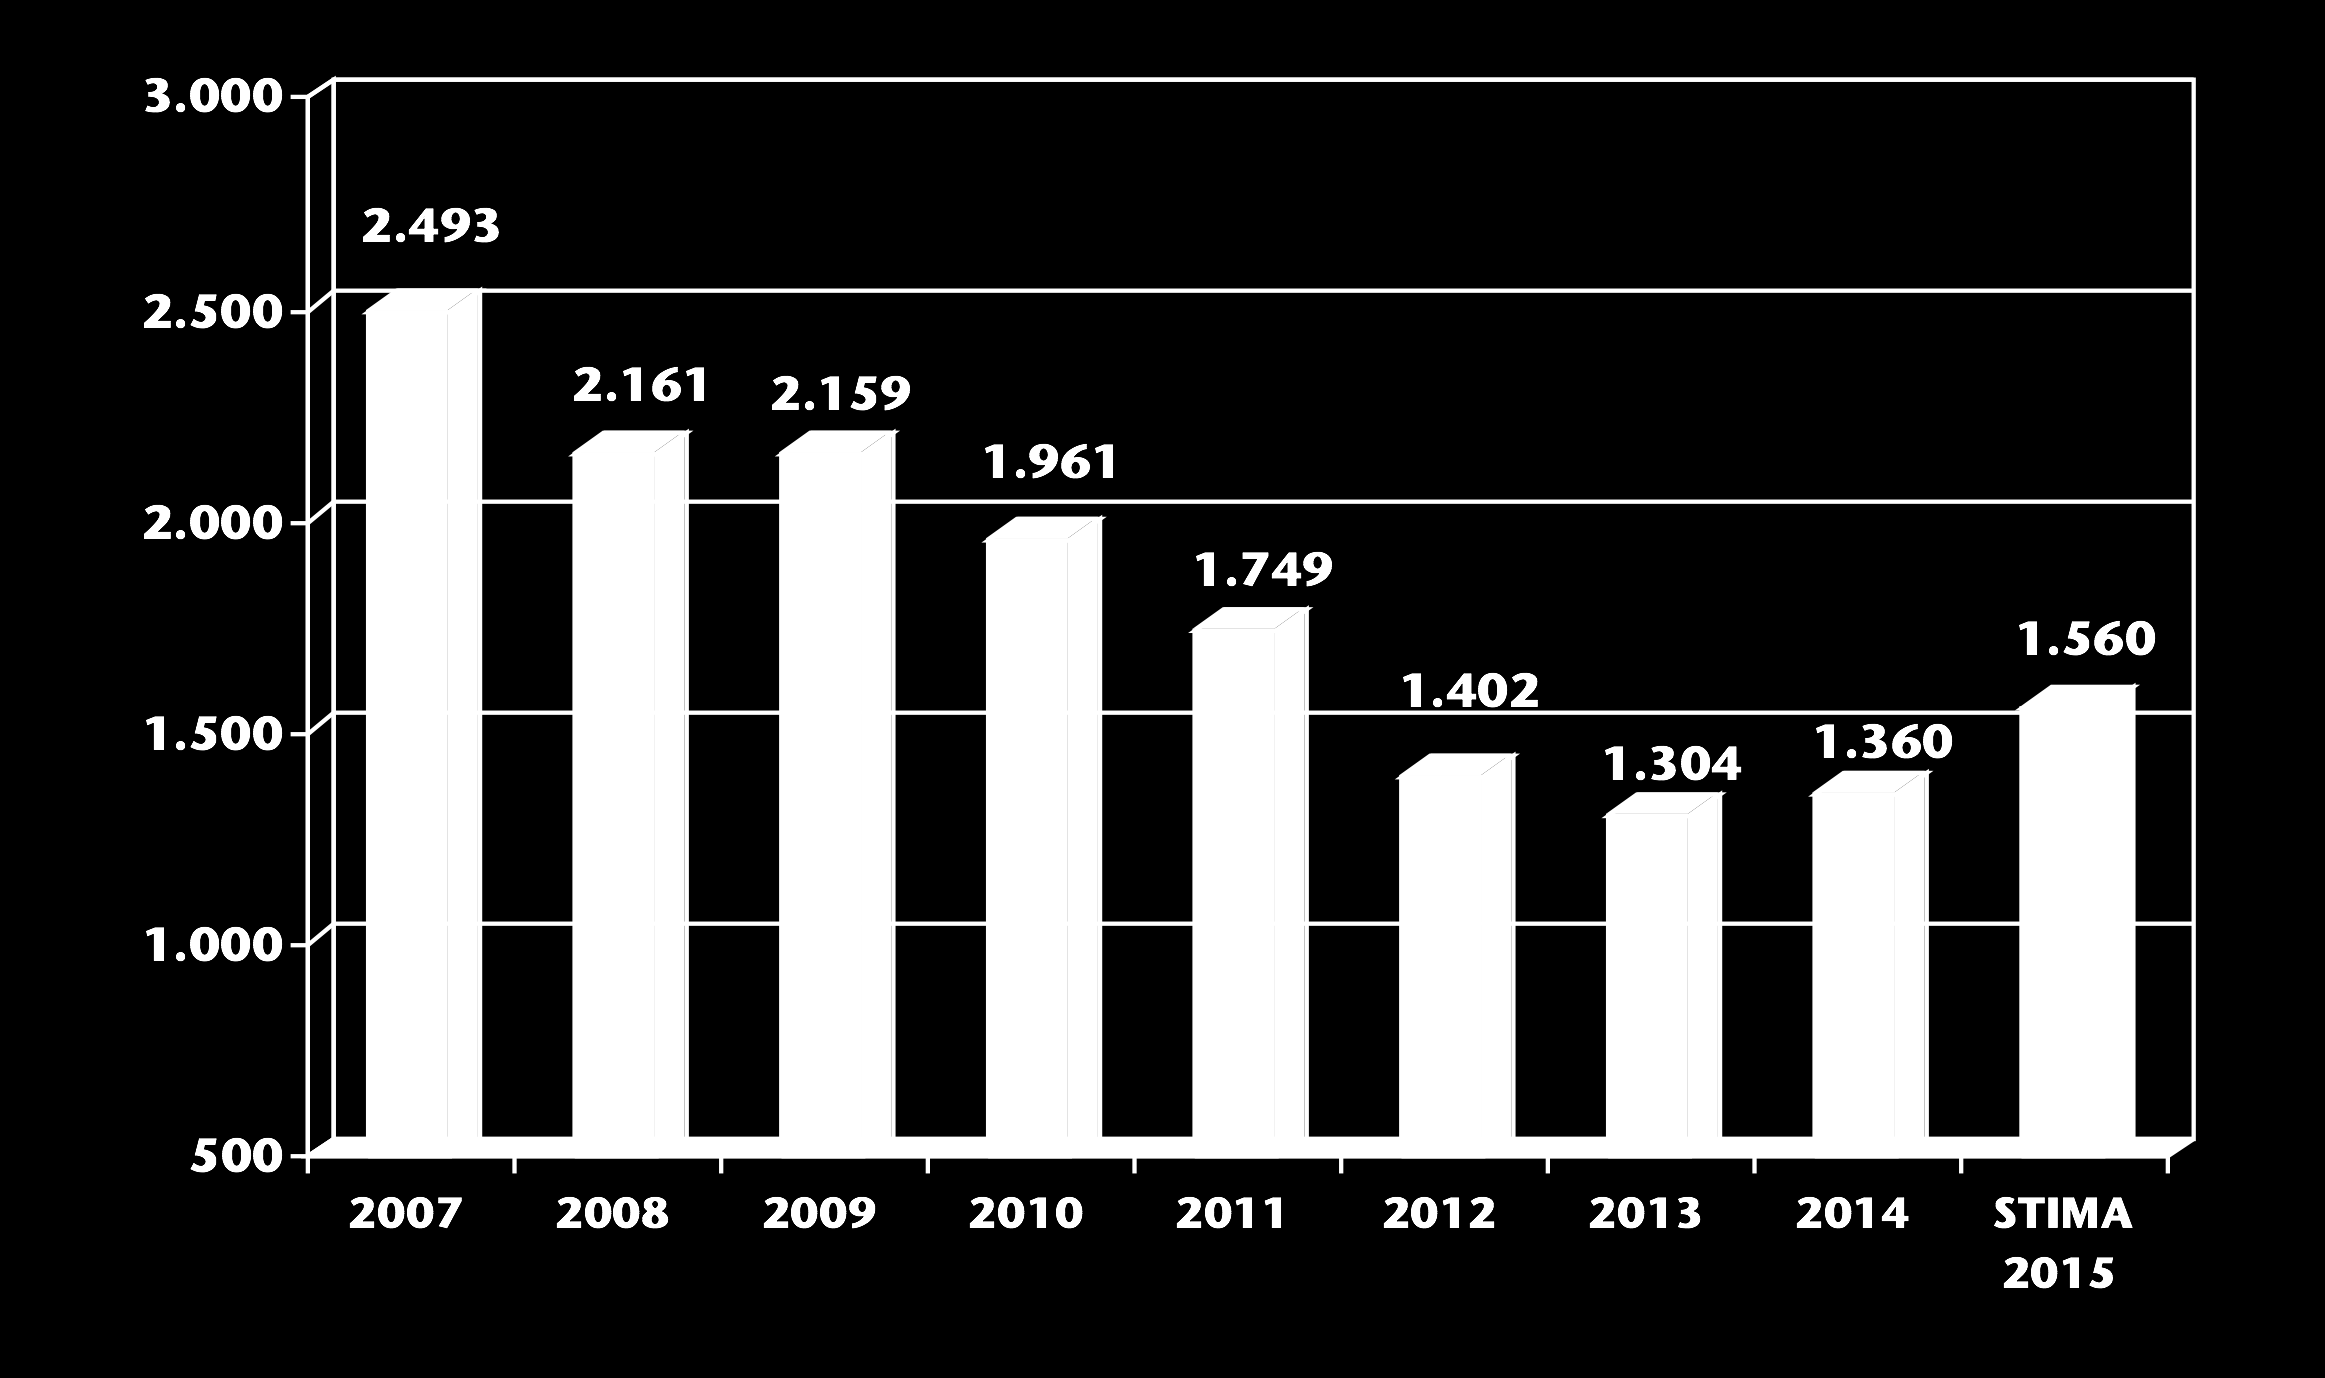 IMMATRICOLAZIONI AUTO IN ITALIA 2007-2015 (migliaia di unità) 2015: -37,4% 2014: -45,5%